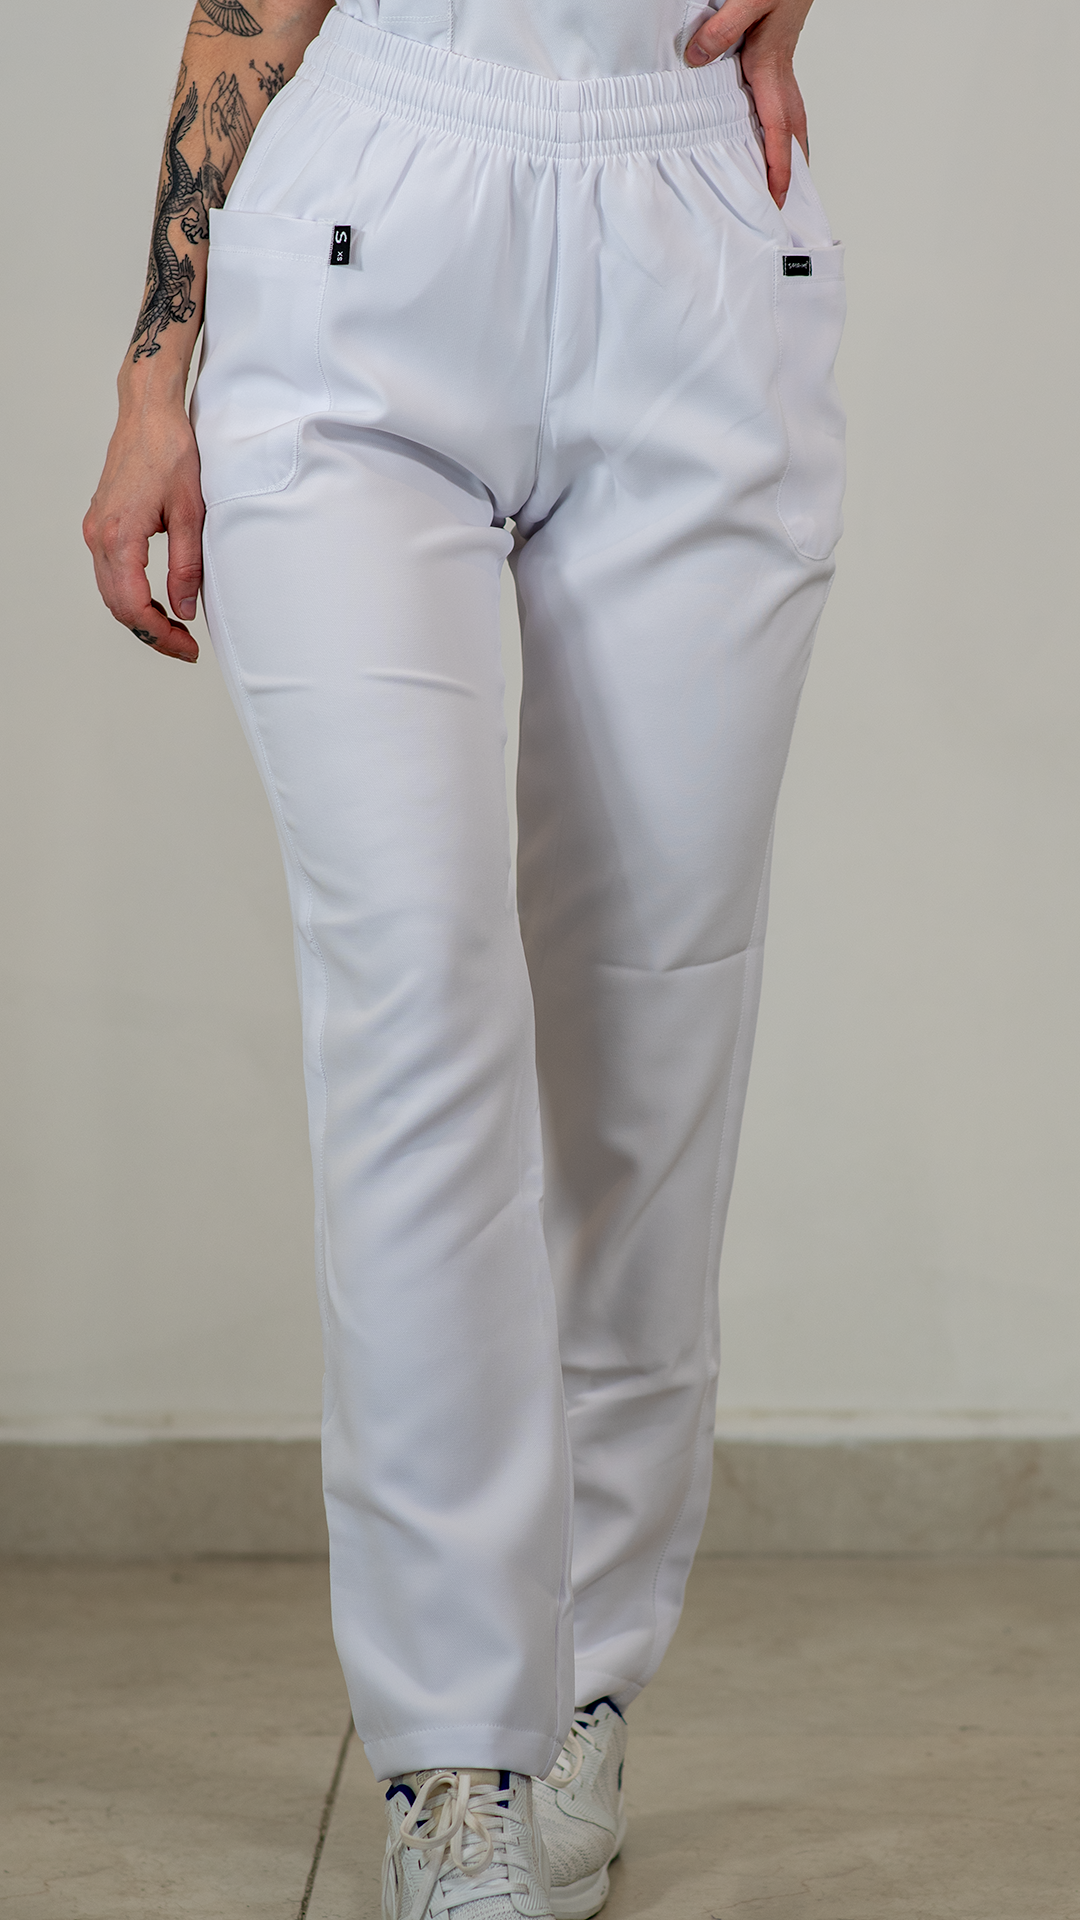 Pantalon Mujer 401 2 Bolsas FW Blanco.